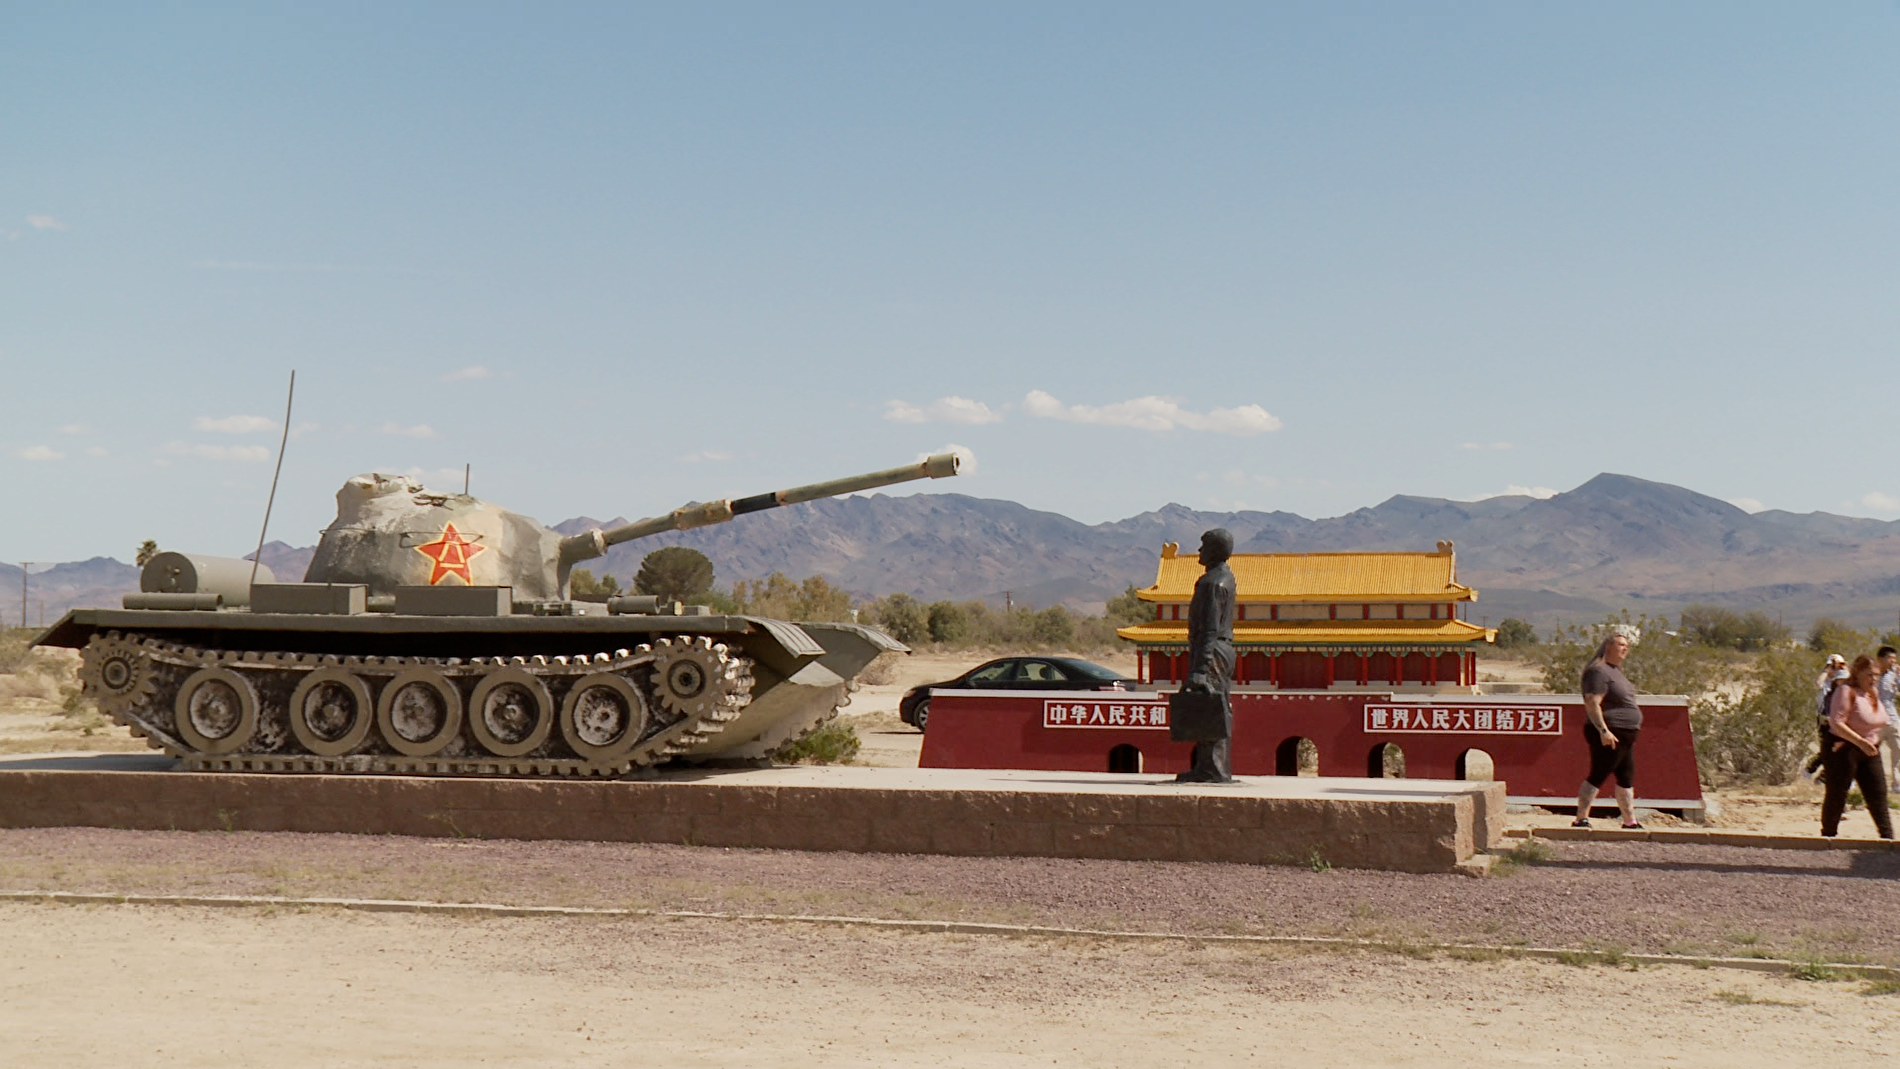 六四35周年前夕 南加州「坦克人」雕塑遭損毀